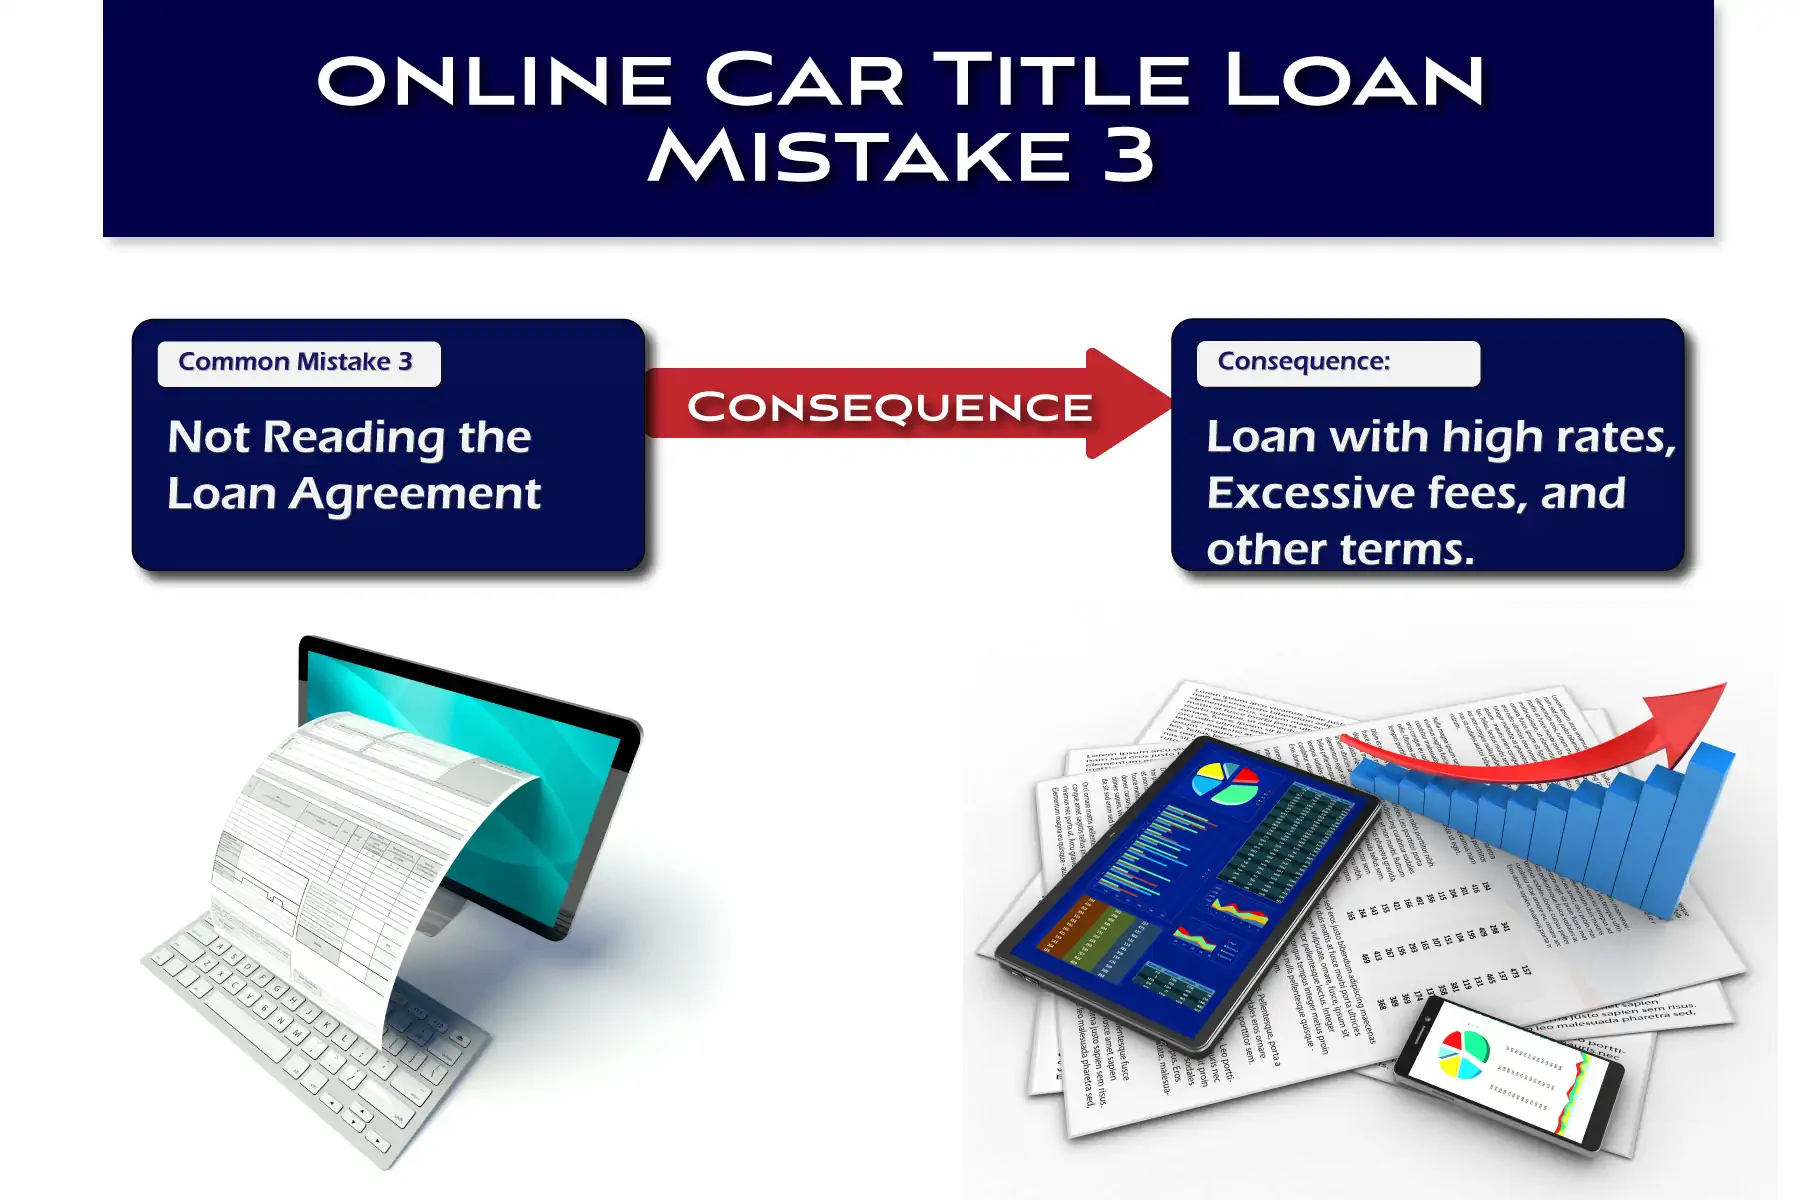 Online Title Loan Mistake 3 - not reading the loan agreement